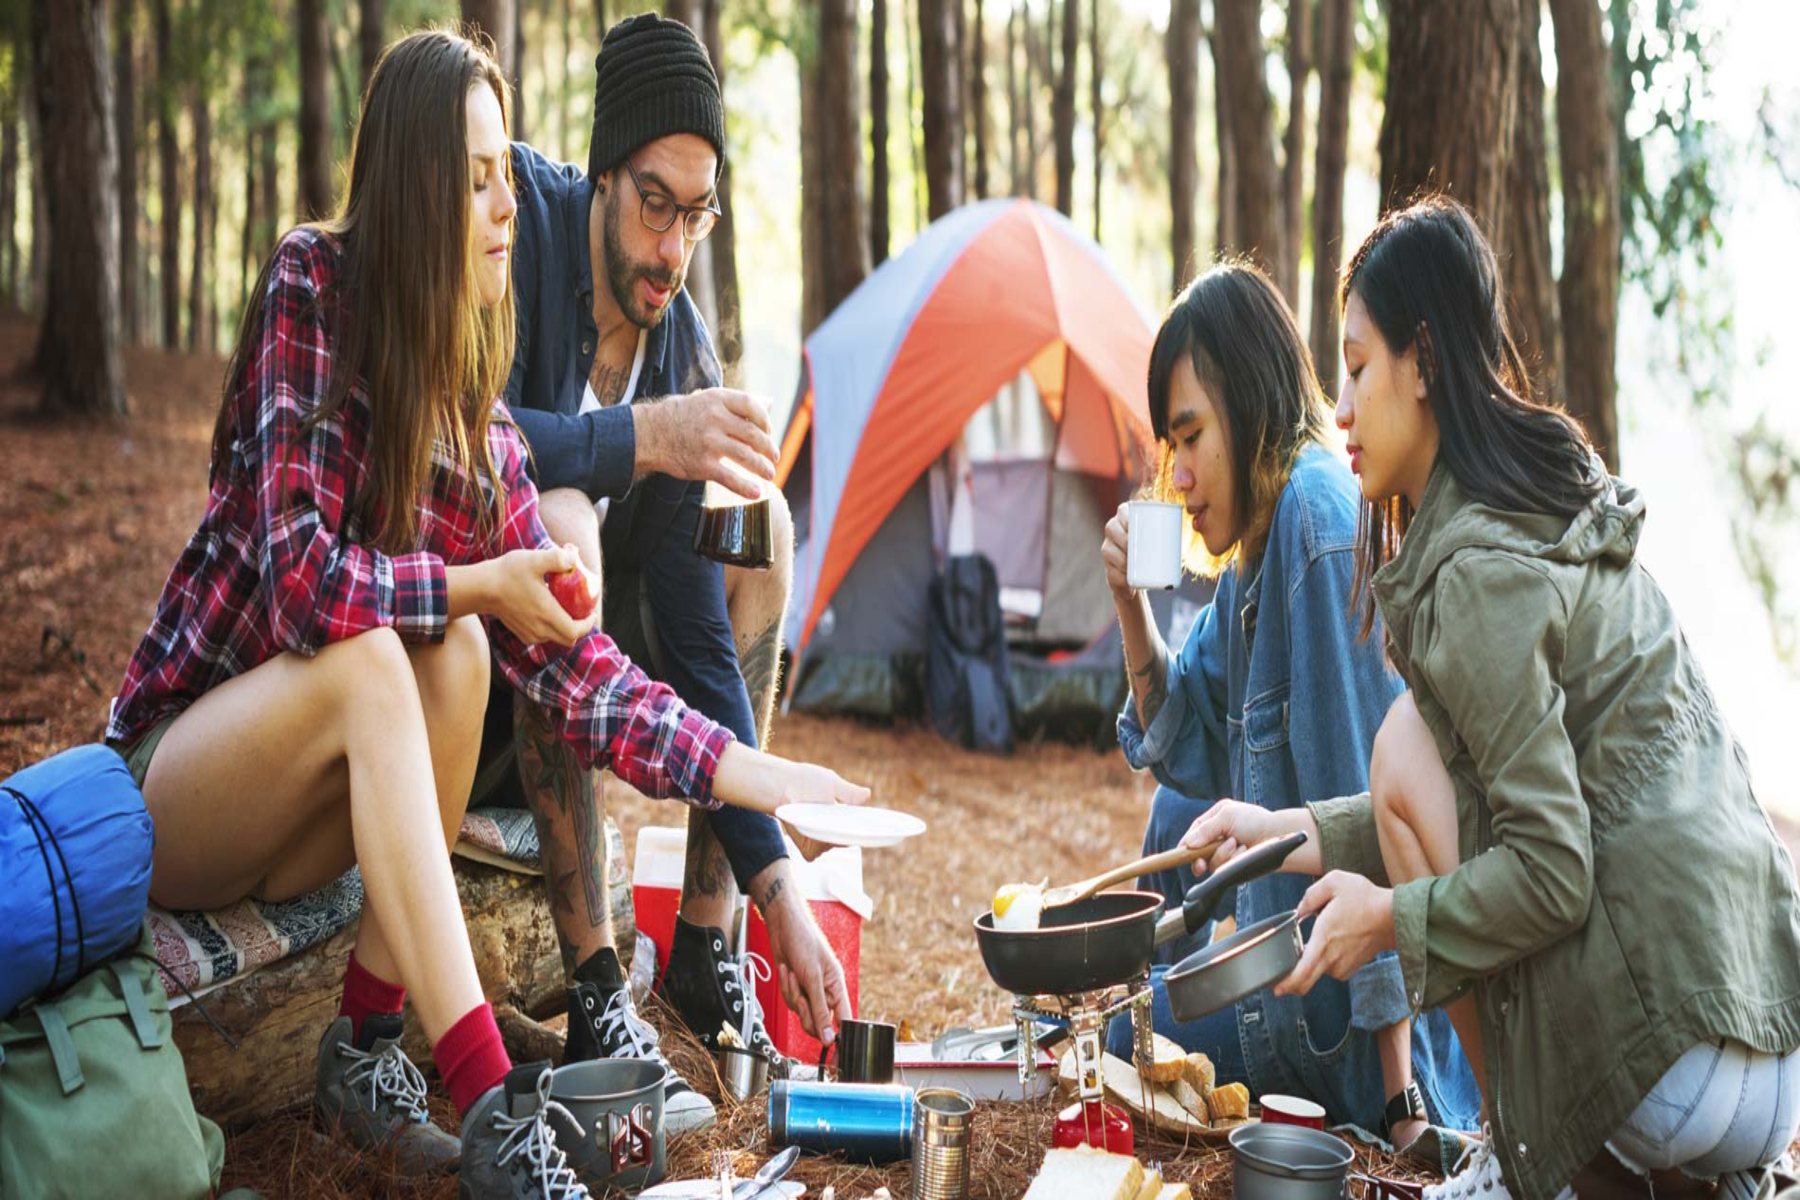 Camping φαγητό: Νόστιμα και εύκολα γεύματα για την επόμενη περιπέτειά σας στο camping